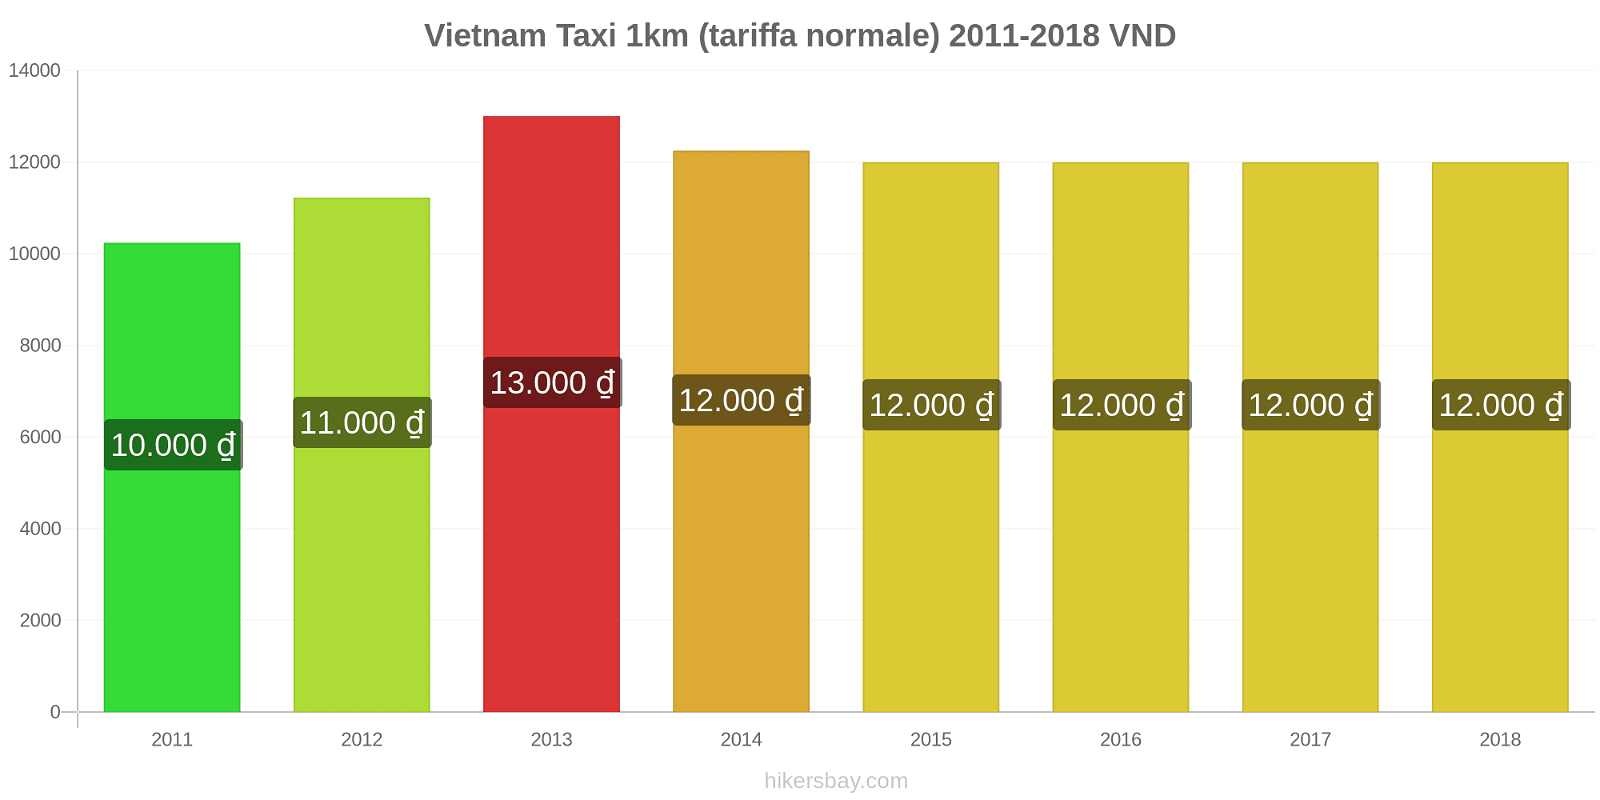 Vietnam cambi di prezzo Taxi 1km (tariffa normale) hikersbay.com